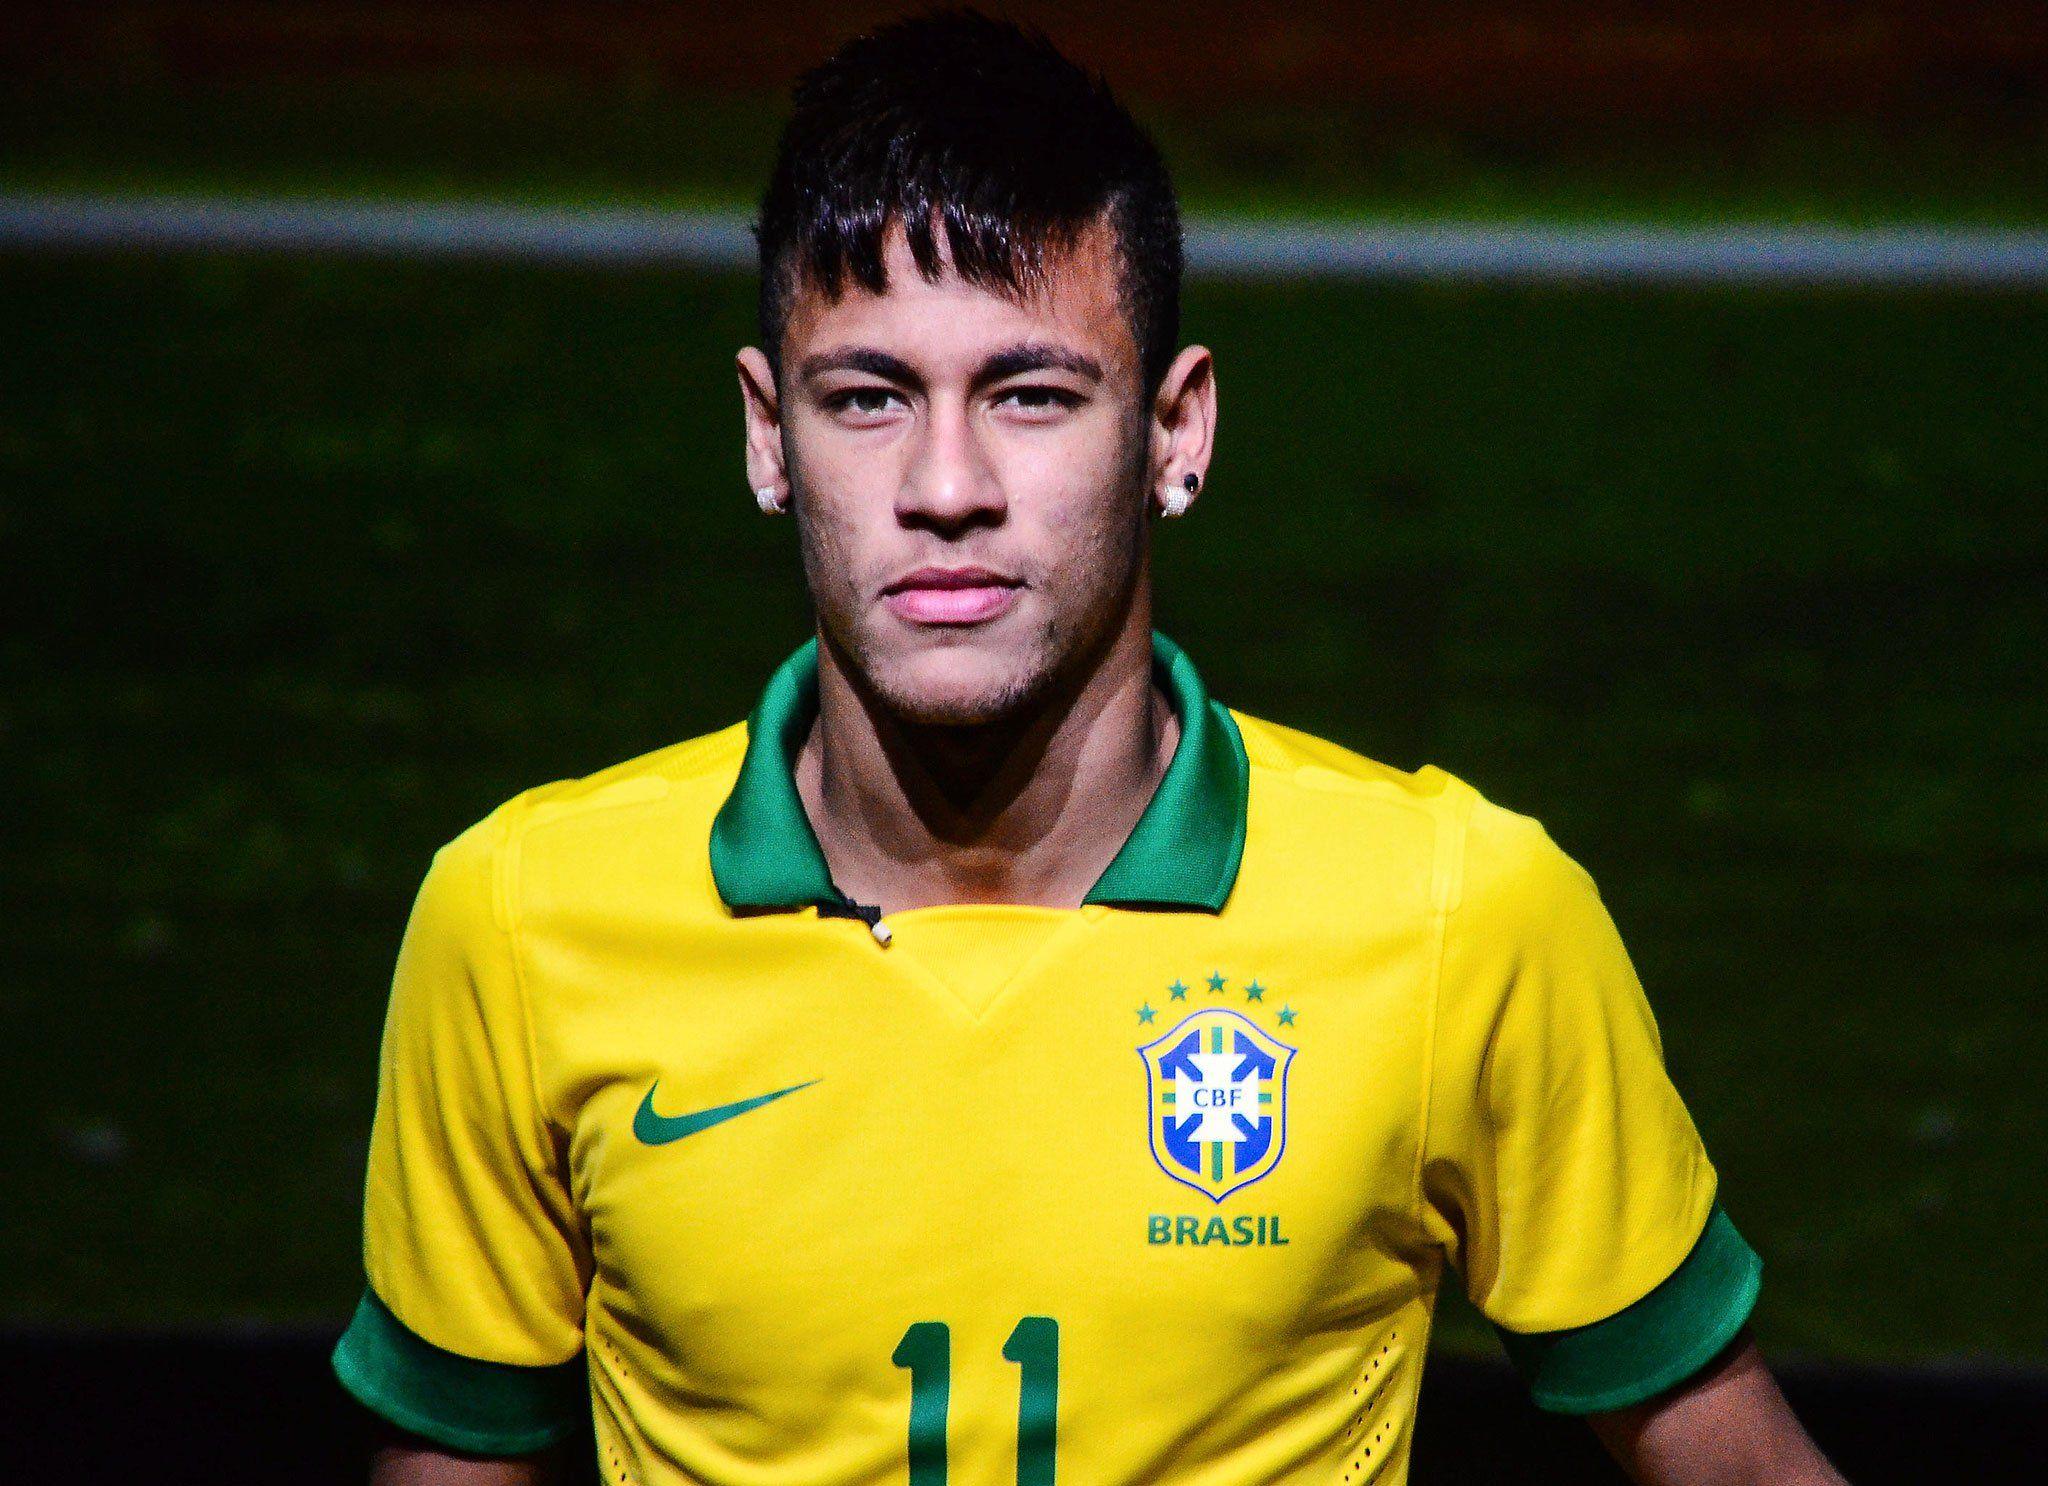 Neymar Biography, Life Achievements & Timeline